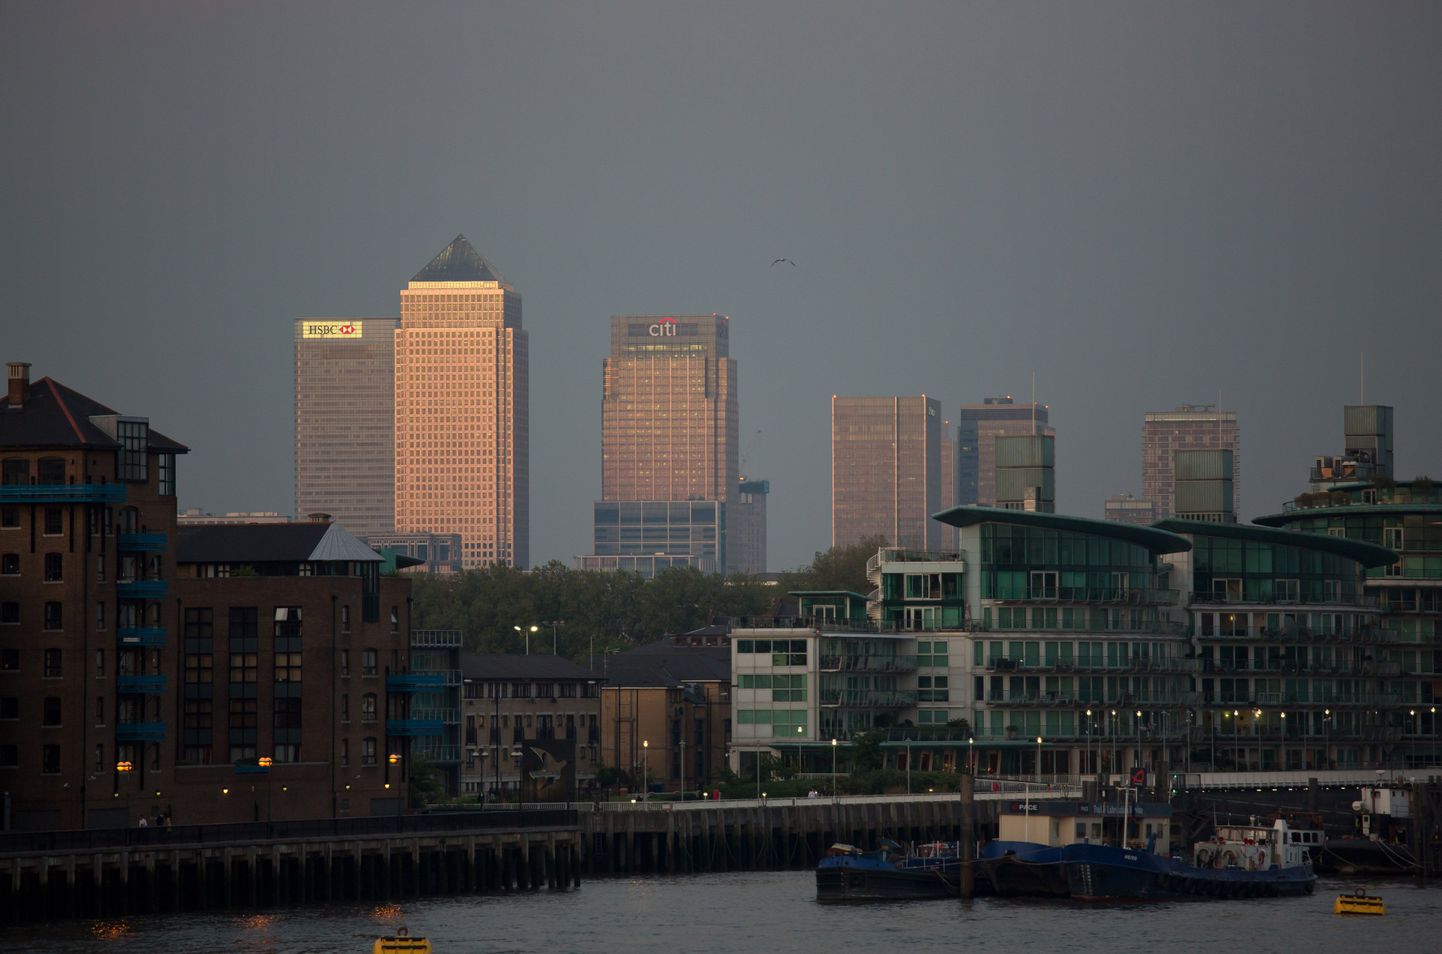 Londoni finantskeskus, kus kujunevad pankadevahelised laenuintressid ehk erinevate laenude Liborid.